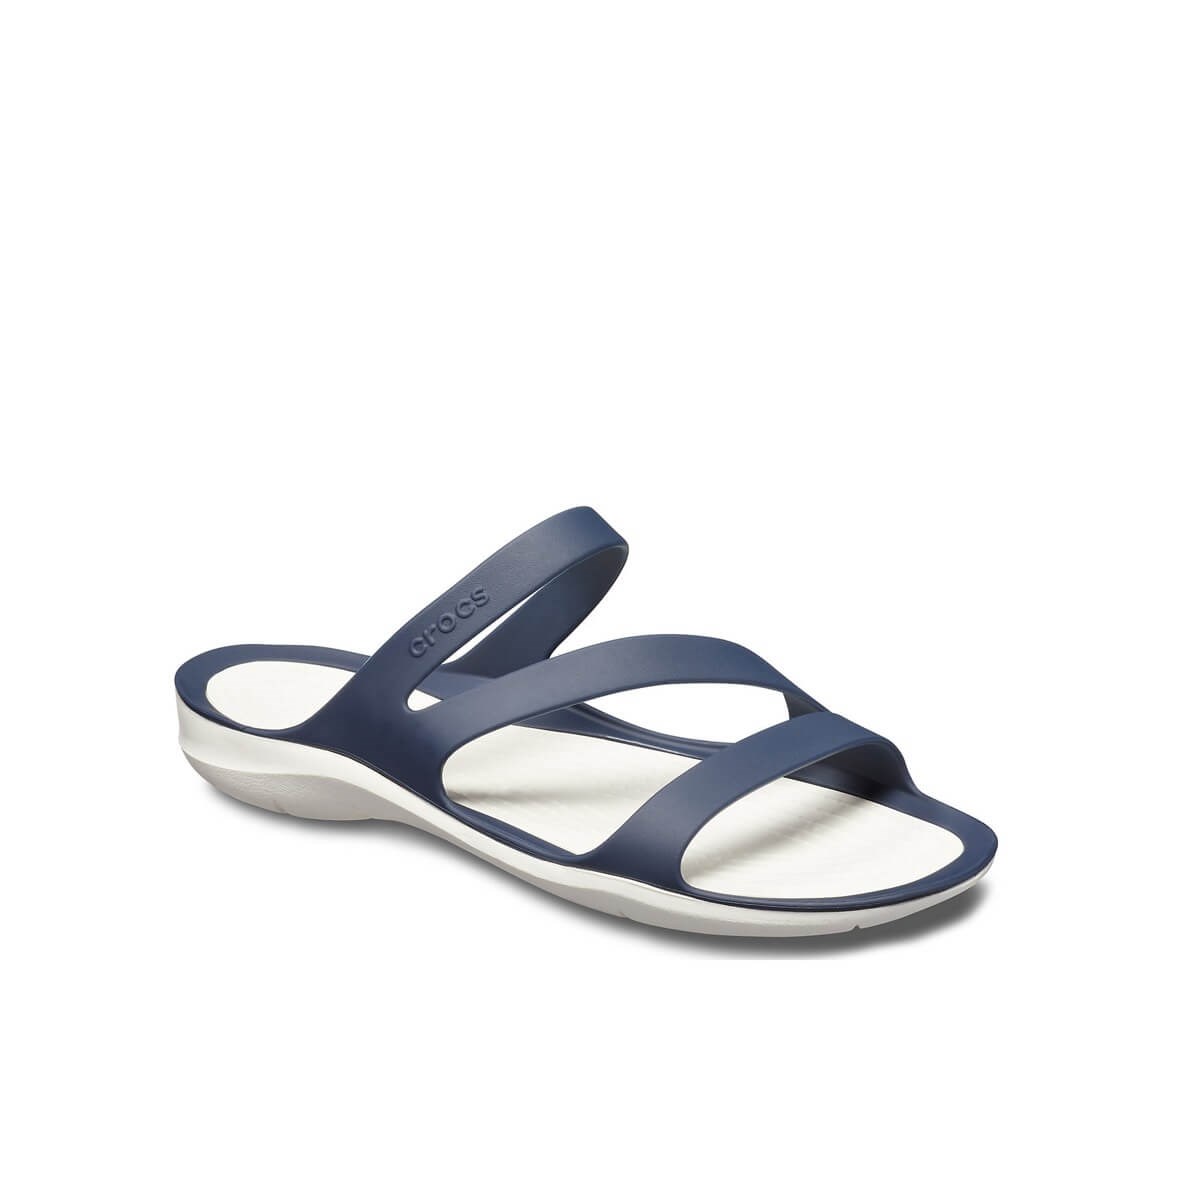 Crocs Crocband Navy/White (Lacivert/Beyaz) Bayan Terlik & Sandalet